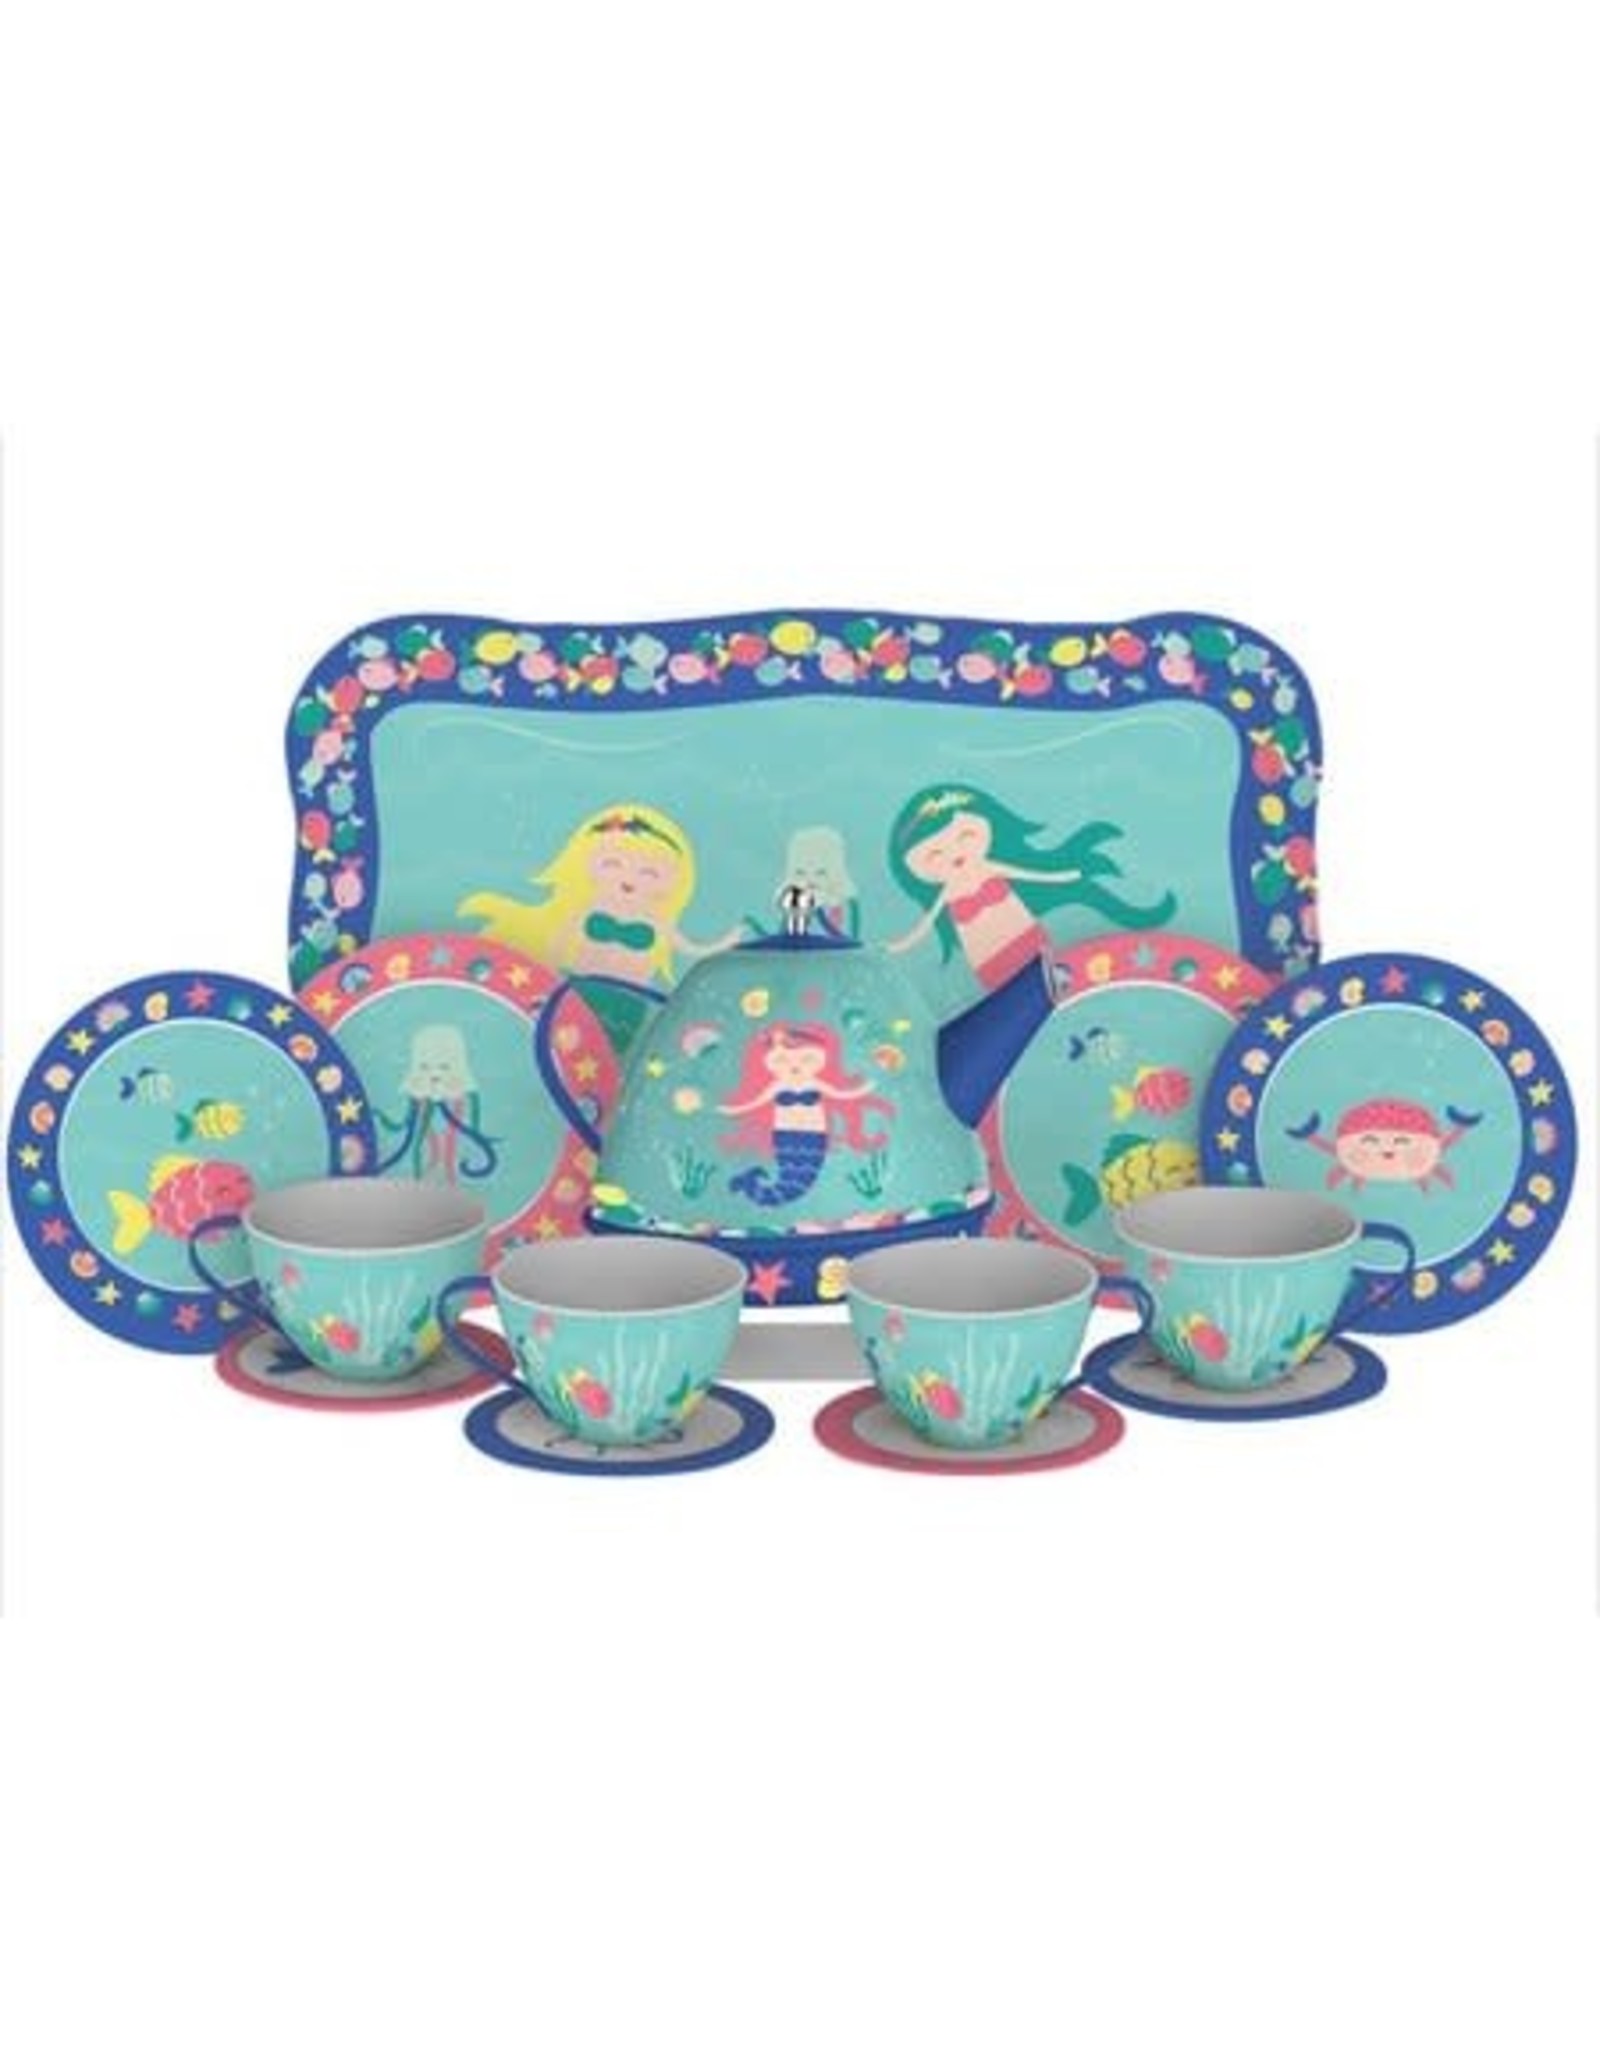 Mermaid Tin Tea Set